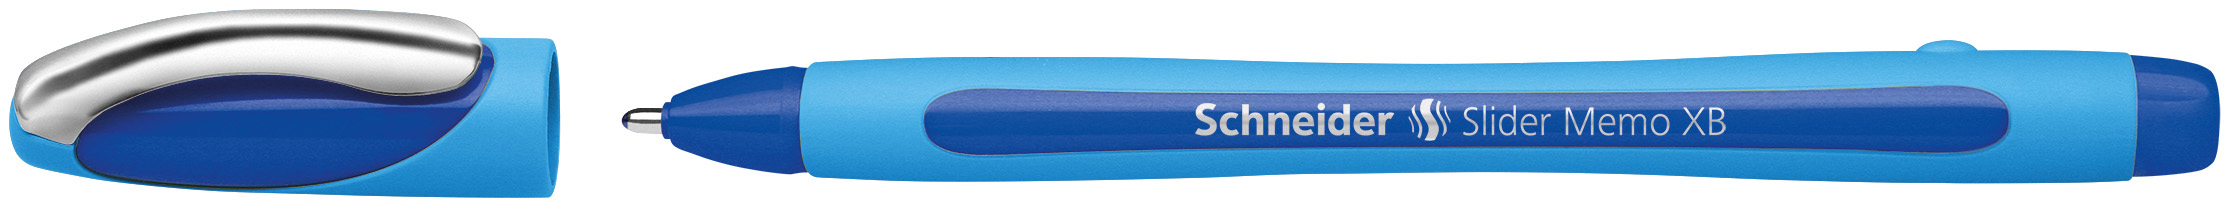 SCHNEIDER Kugelschreiber Slider Memo XB 0.7mm blau<br>